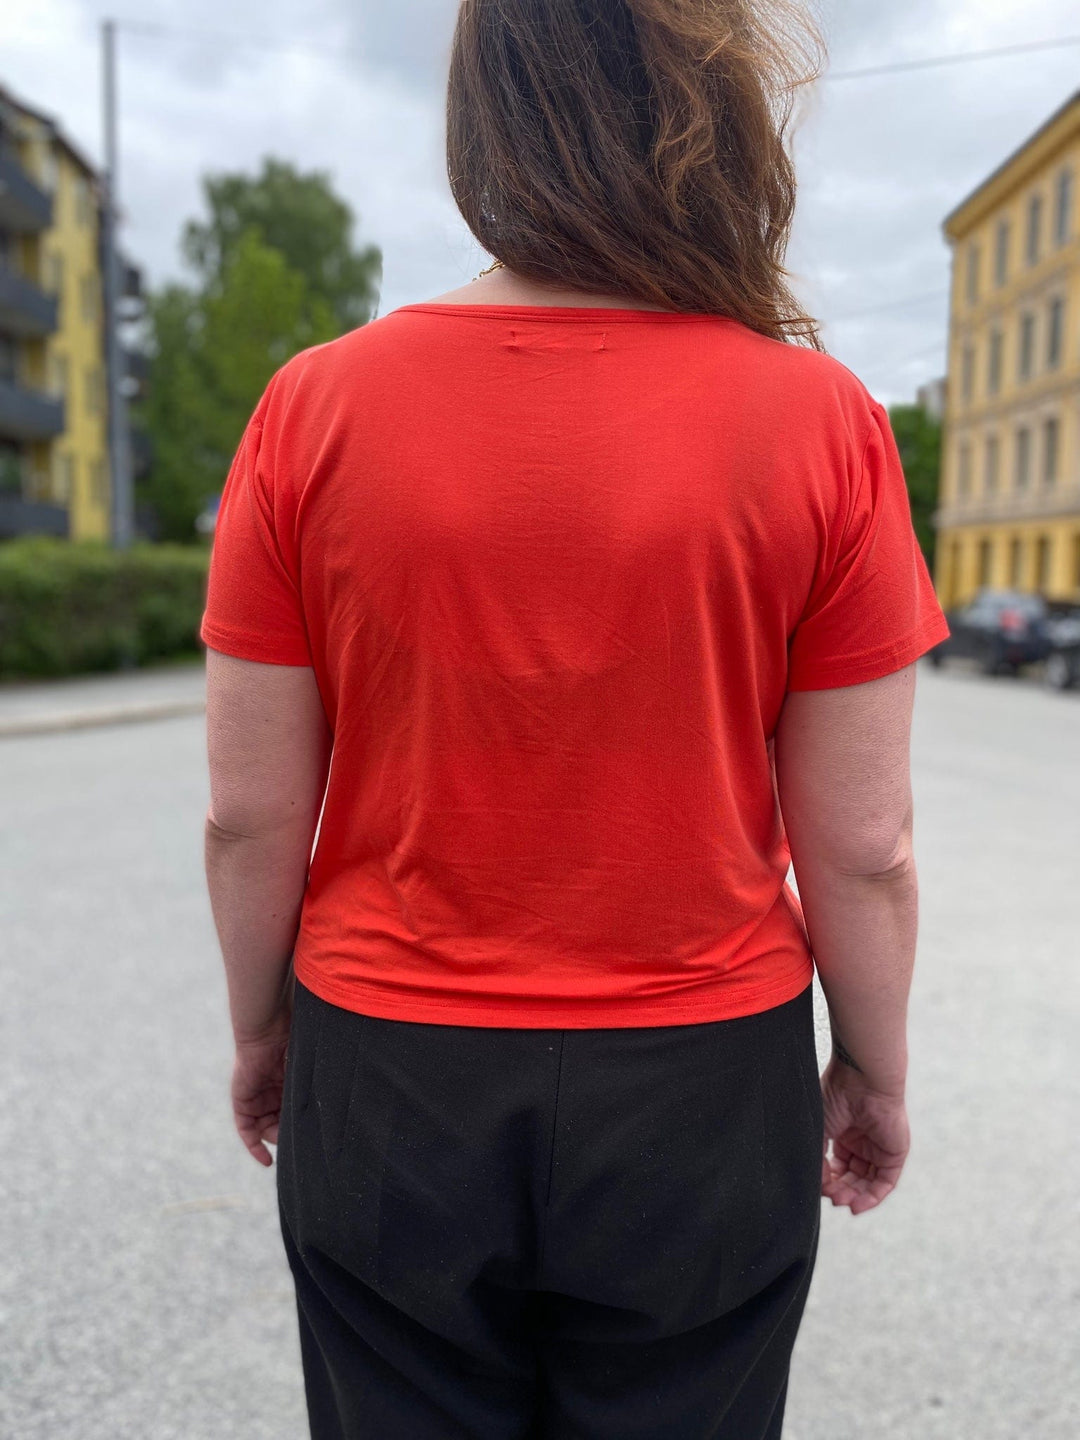 Rød/Orange t-skjorte fra Dianas Vintage. Rund hals, korte ermer og kort lengde.